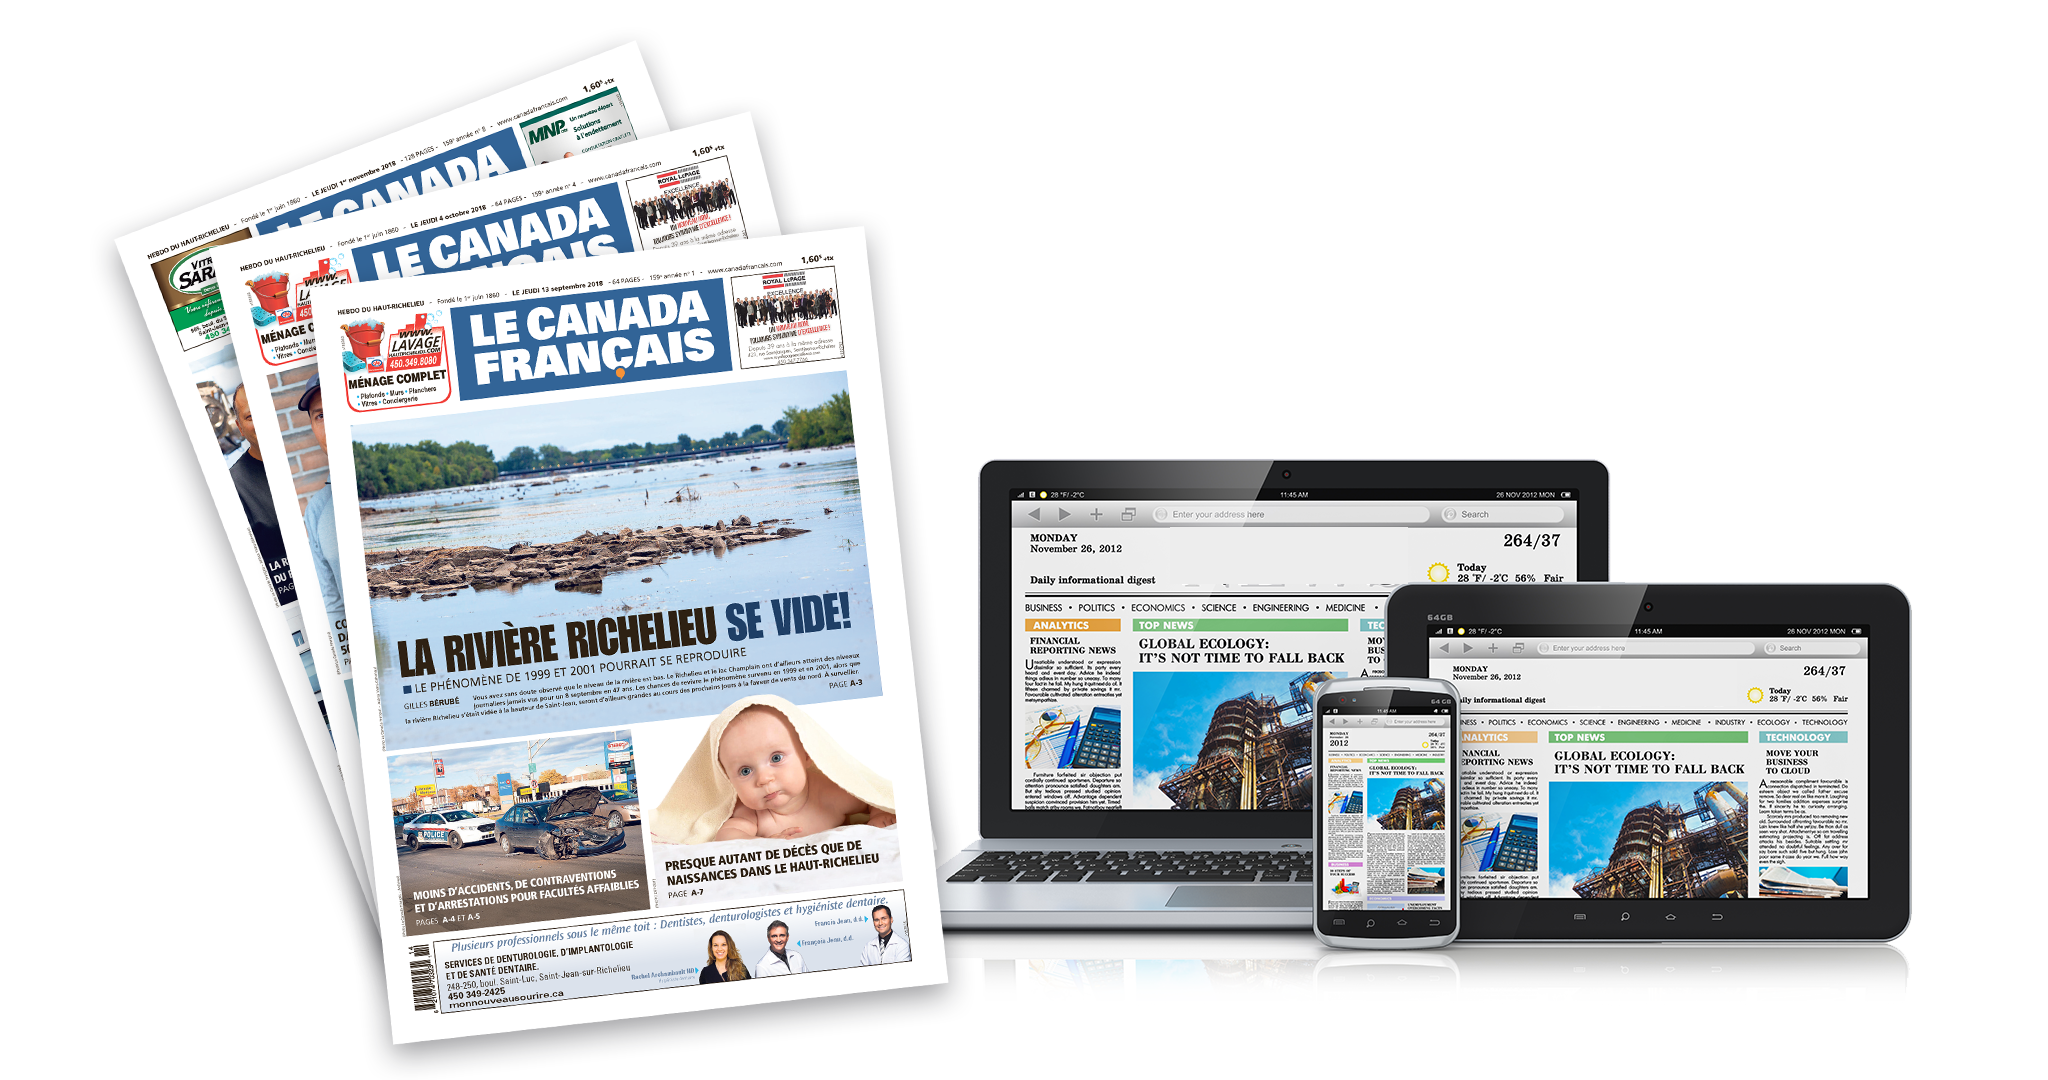 Abonnez-vous au journal Le Canada Francais et accédez à tout le contenu réservé sur le site Web lecanadafrancaiskiosk.milibris.com